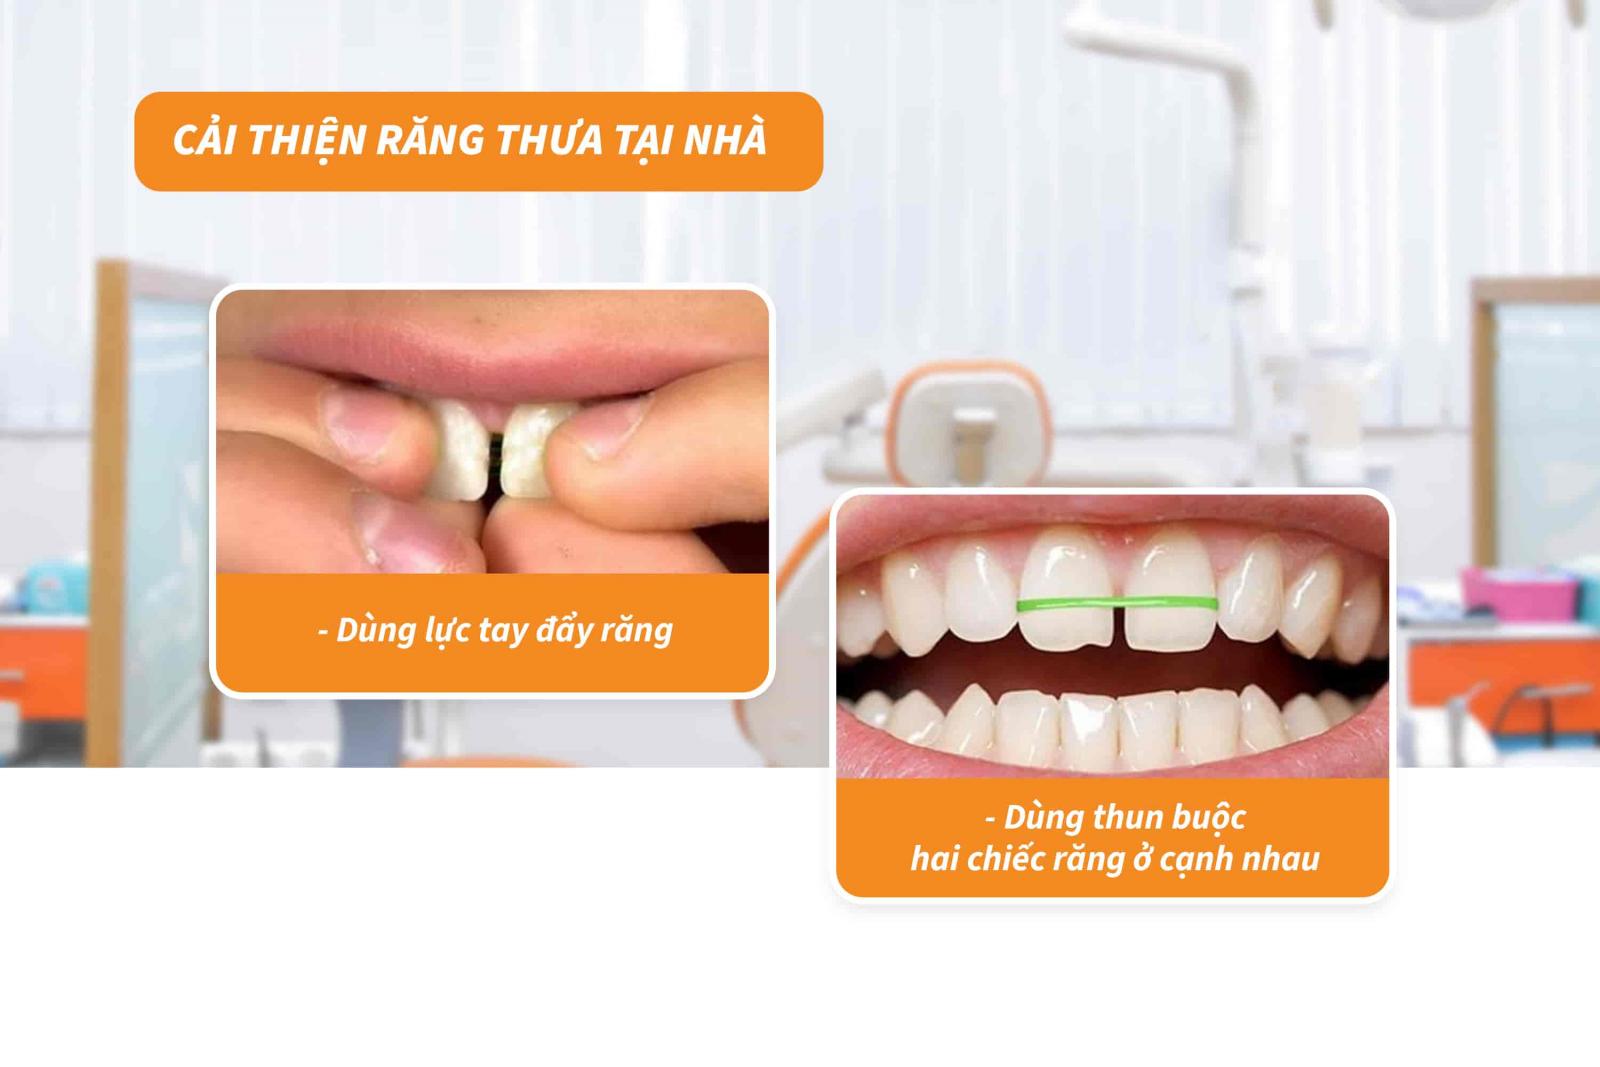 Cải thiện răng thưa tại nhà